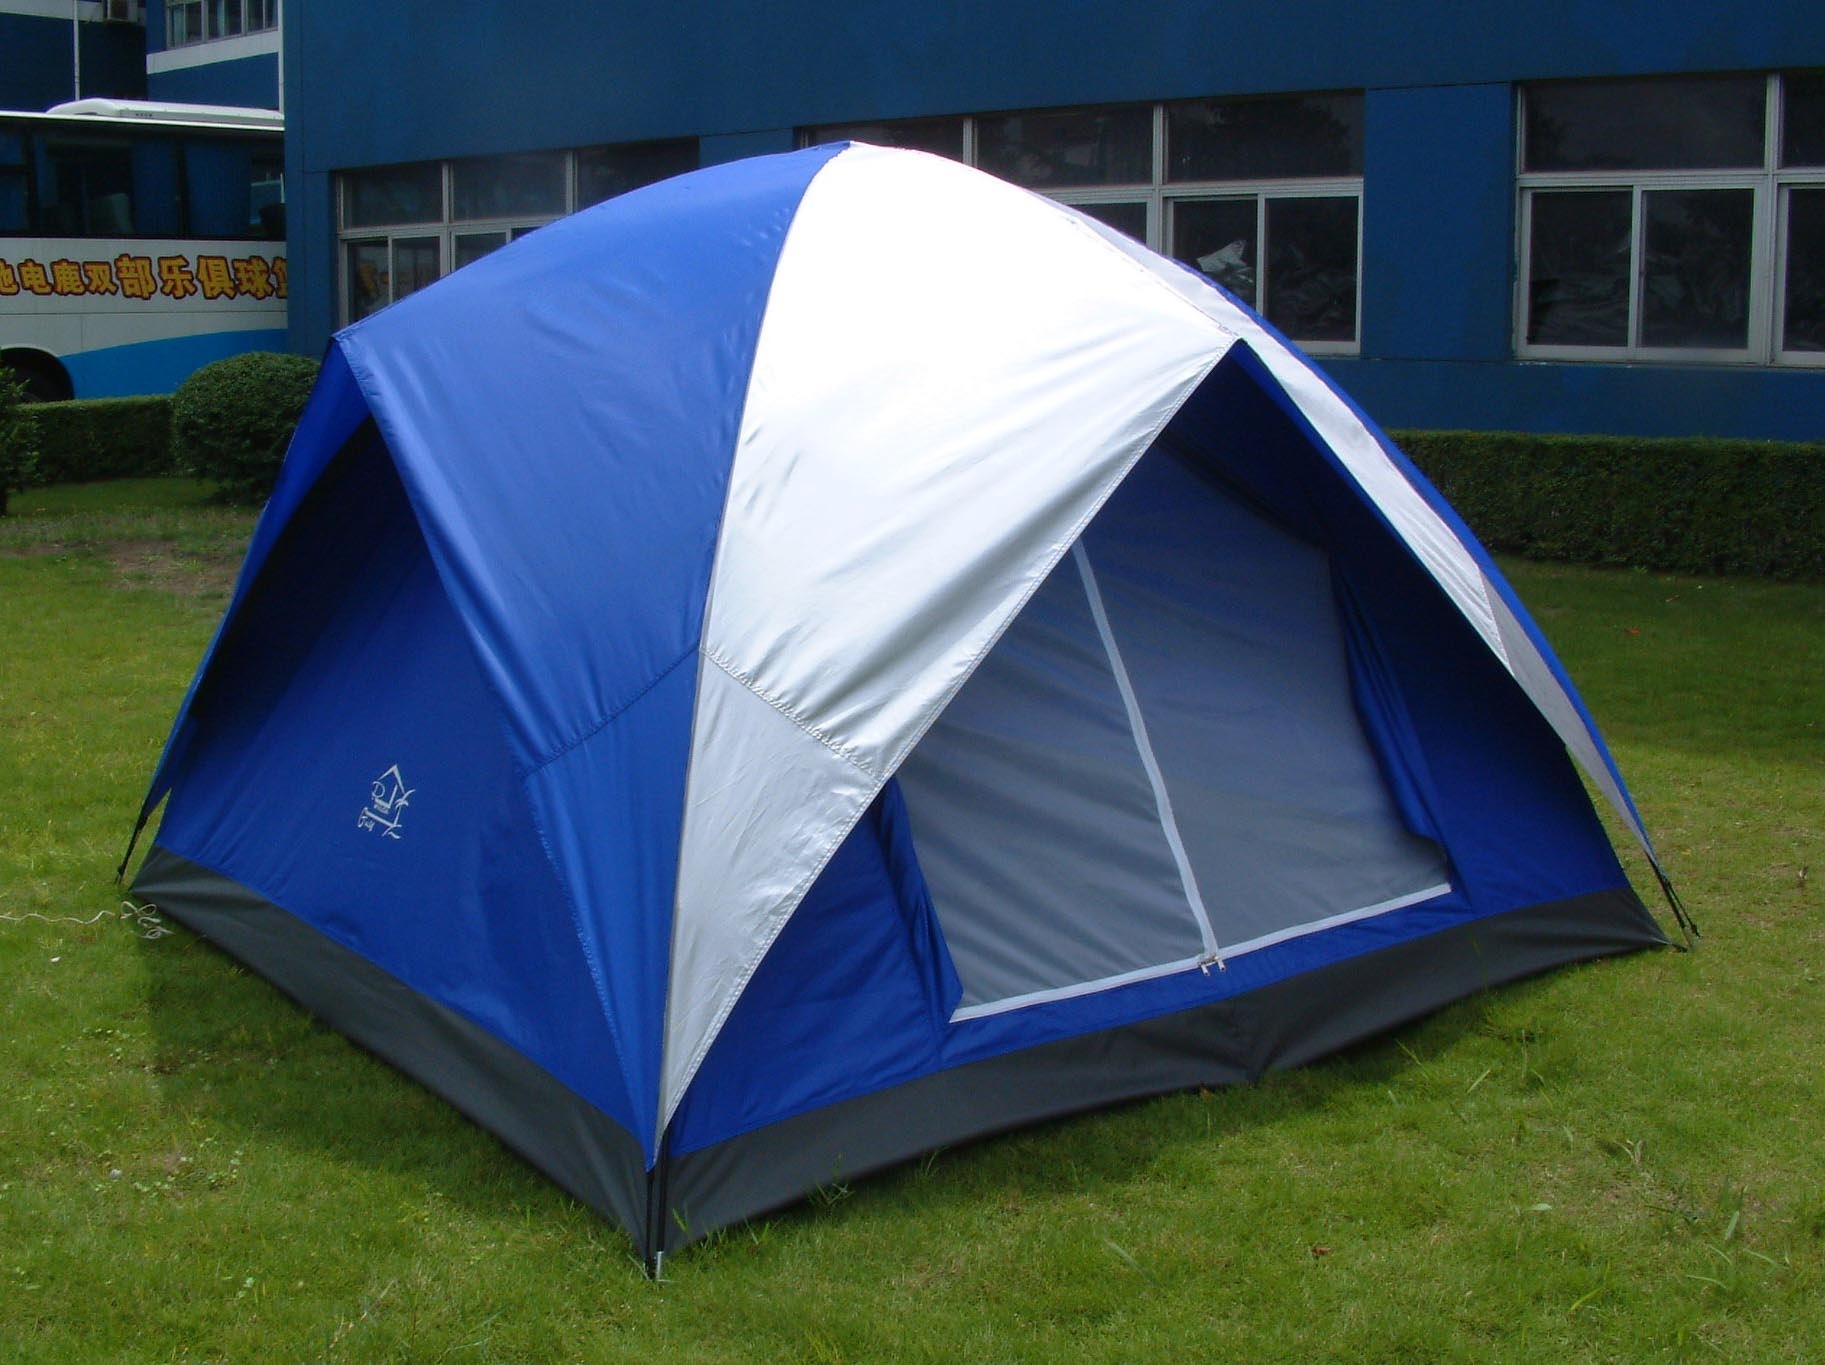 文娱休闲,运动户外 户外用品 野营帐篷 野营帐篷,双层帐篷,四人帐篷